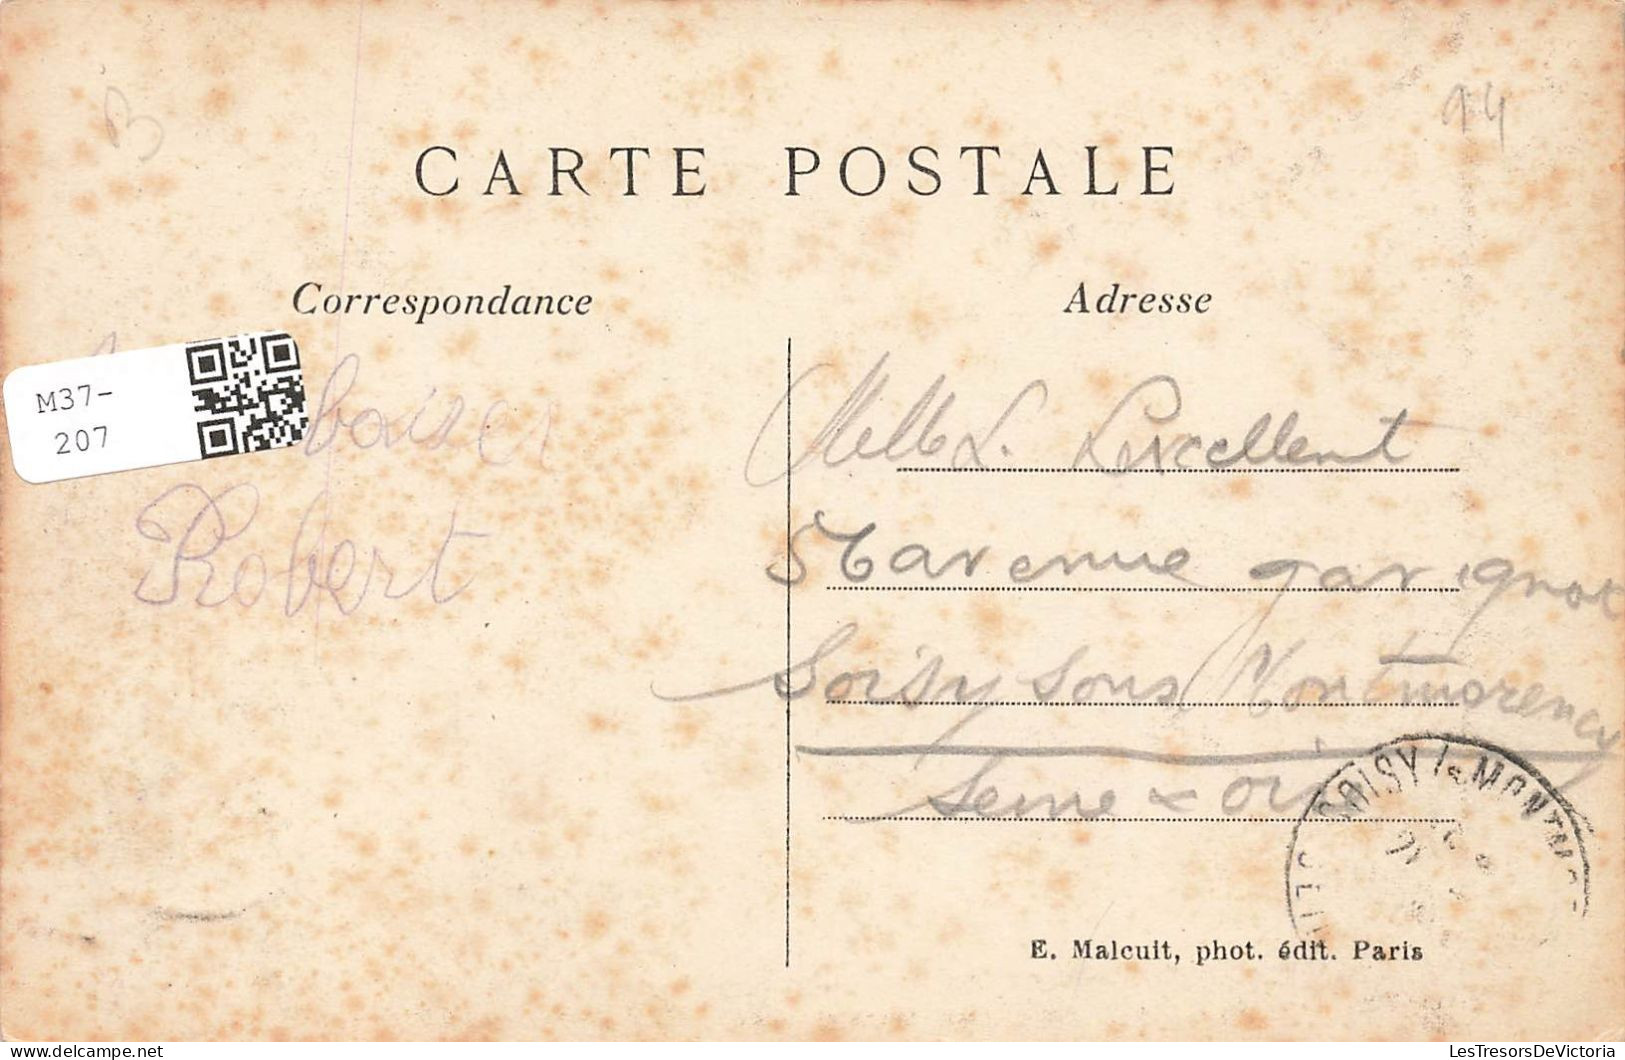 FRANCE - Créteil - Vue Sur Les Bords De La Marne - L'arbre Penché - Carte Postale Ancienne - Creteil